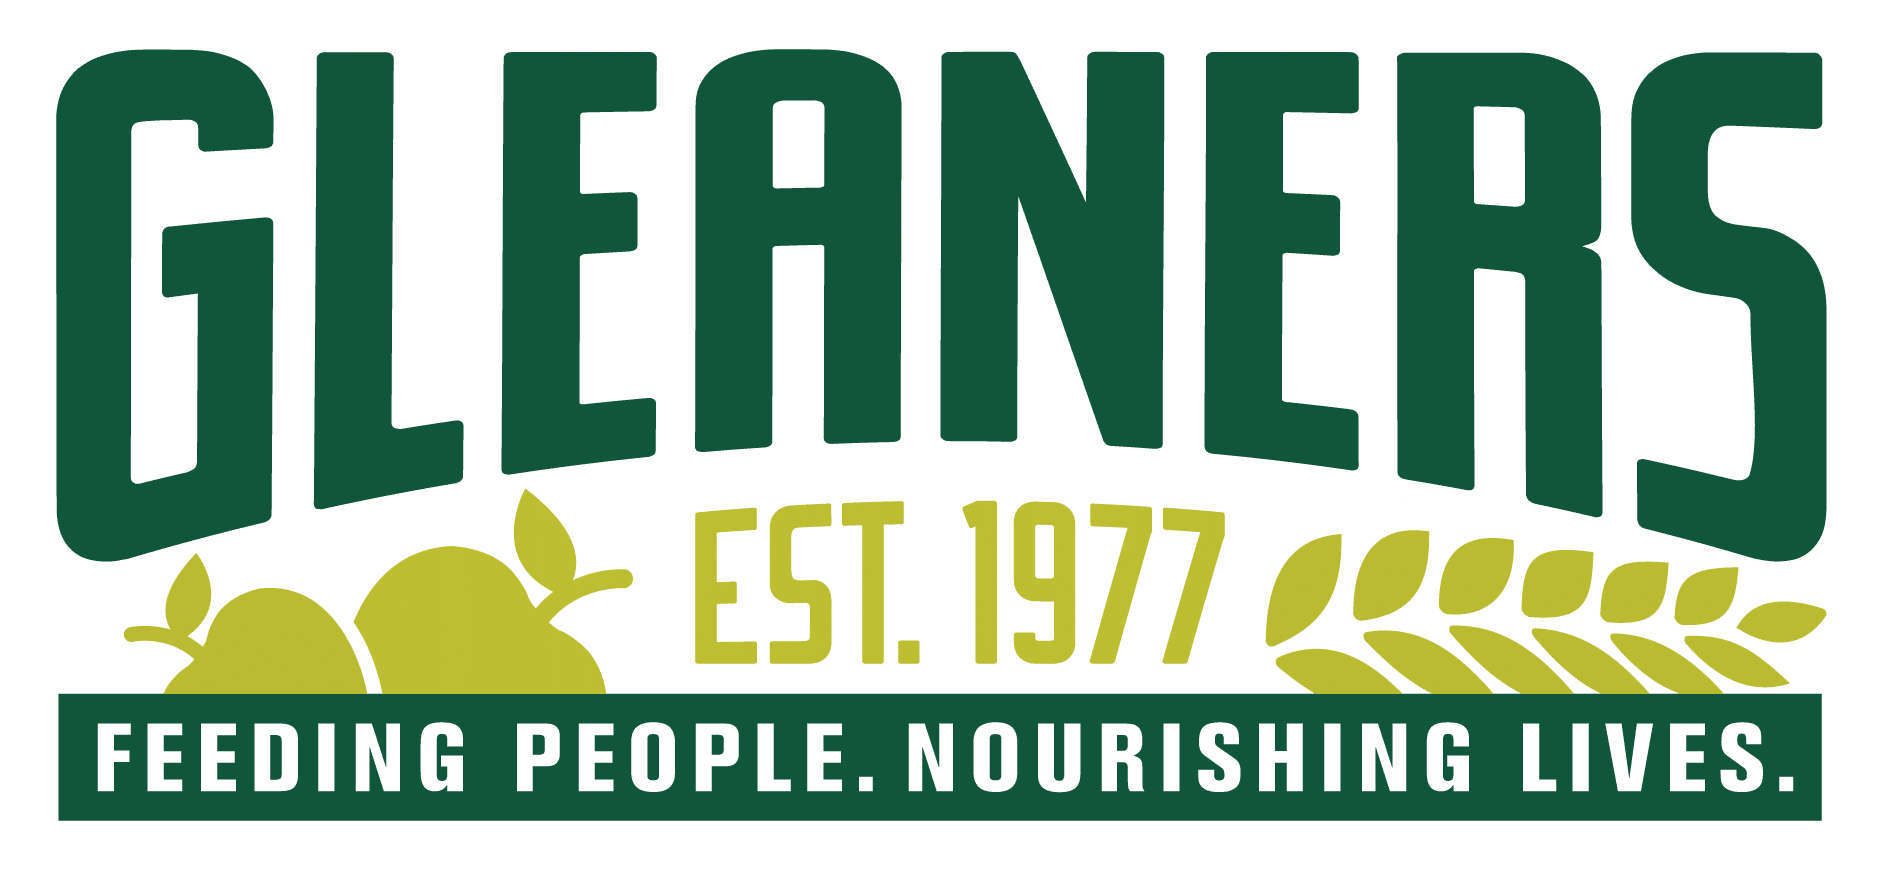 Gleaners Logo